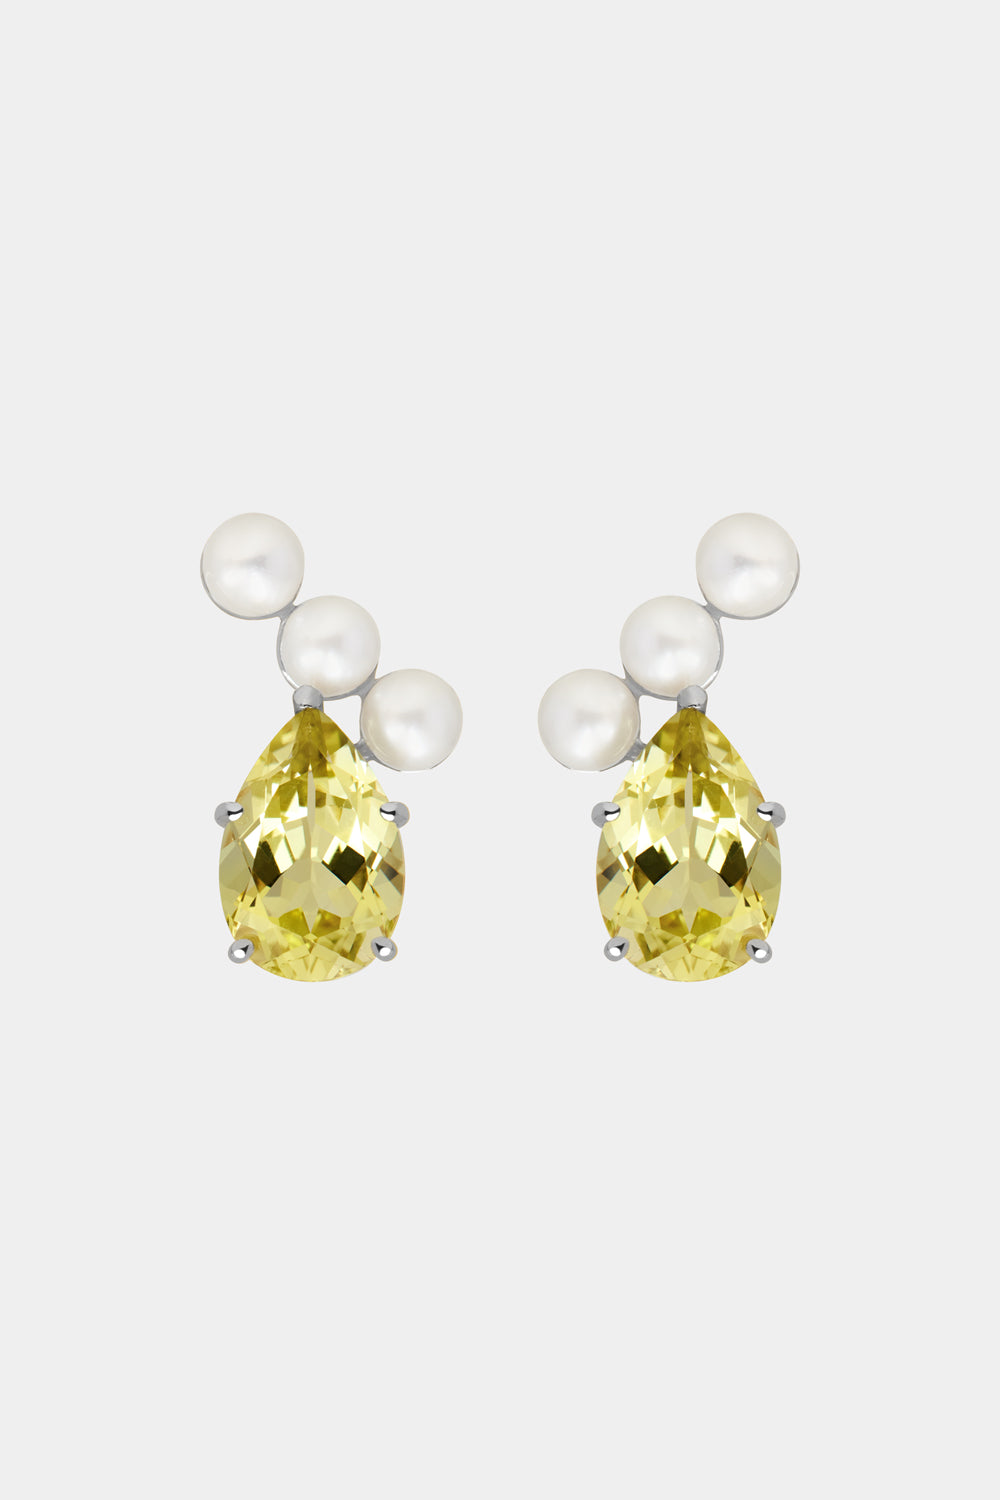 Arwen Lemon Quartz Pearl Earrings | Silver